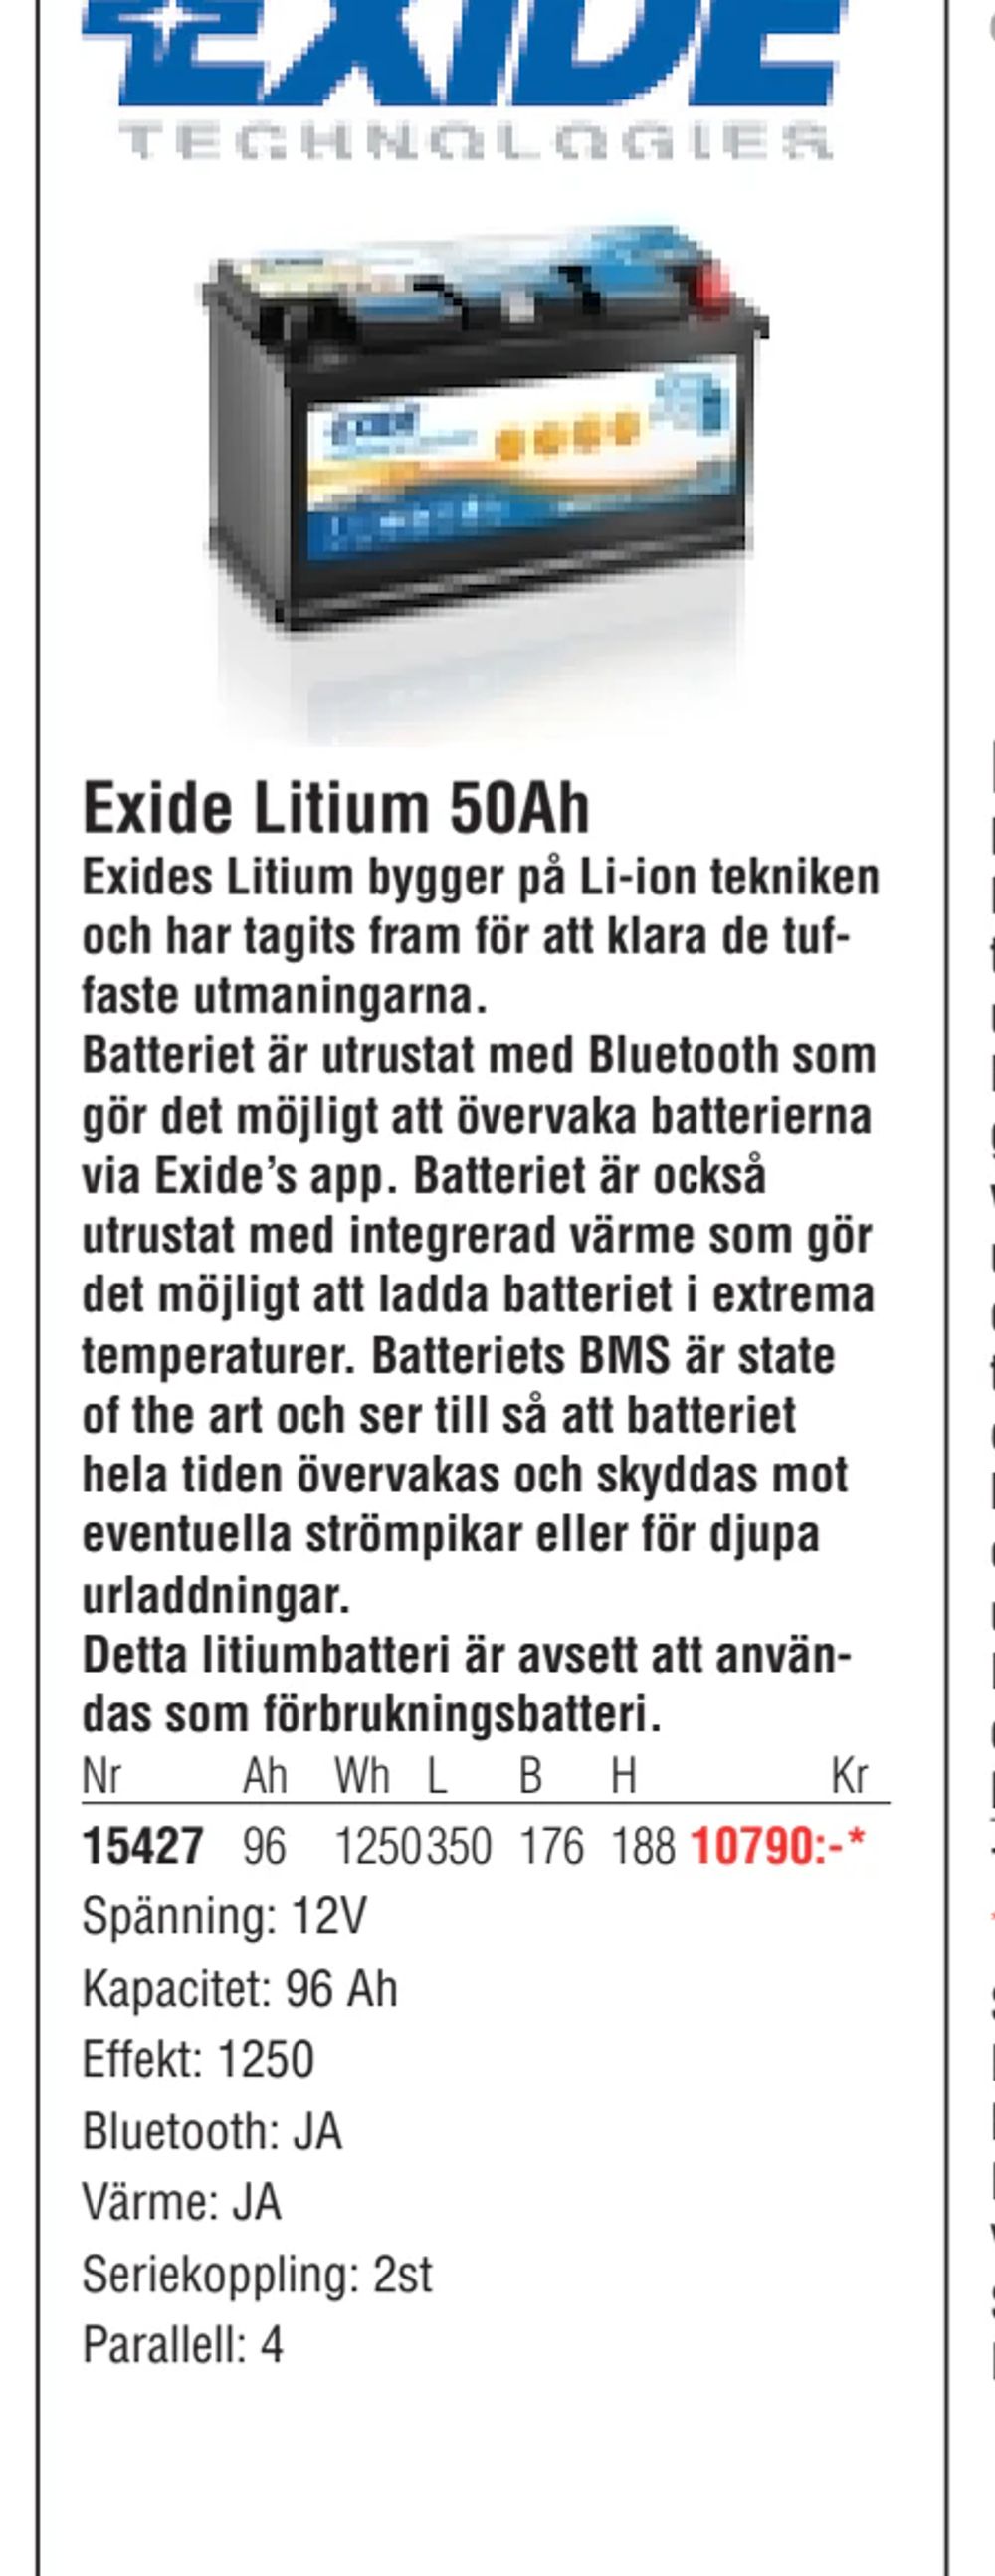 Erbjudanden på Exide Litium 50Ah från Erlandsons Brygga för 10 790 kr